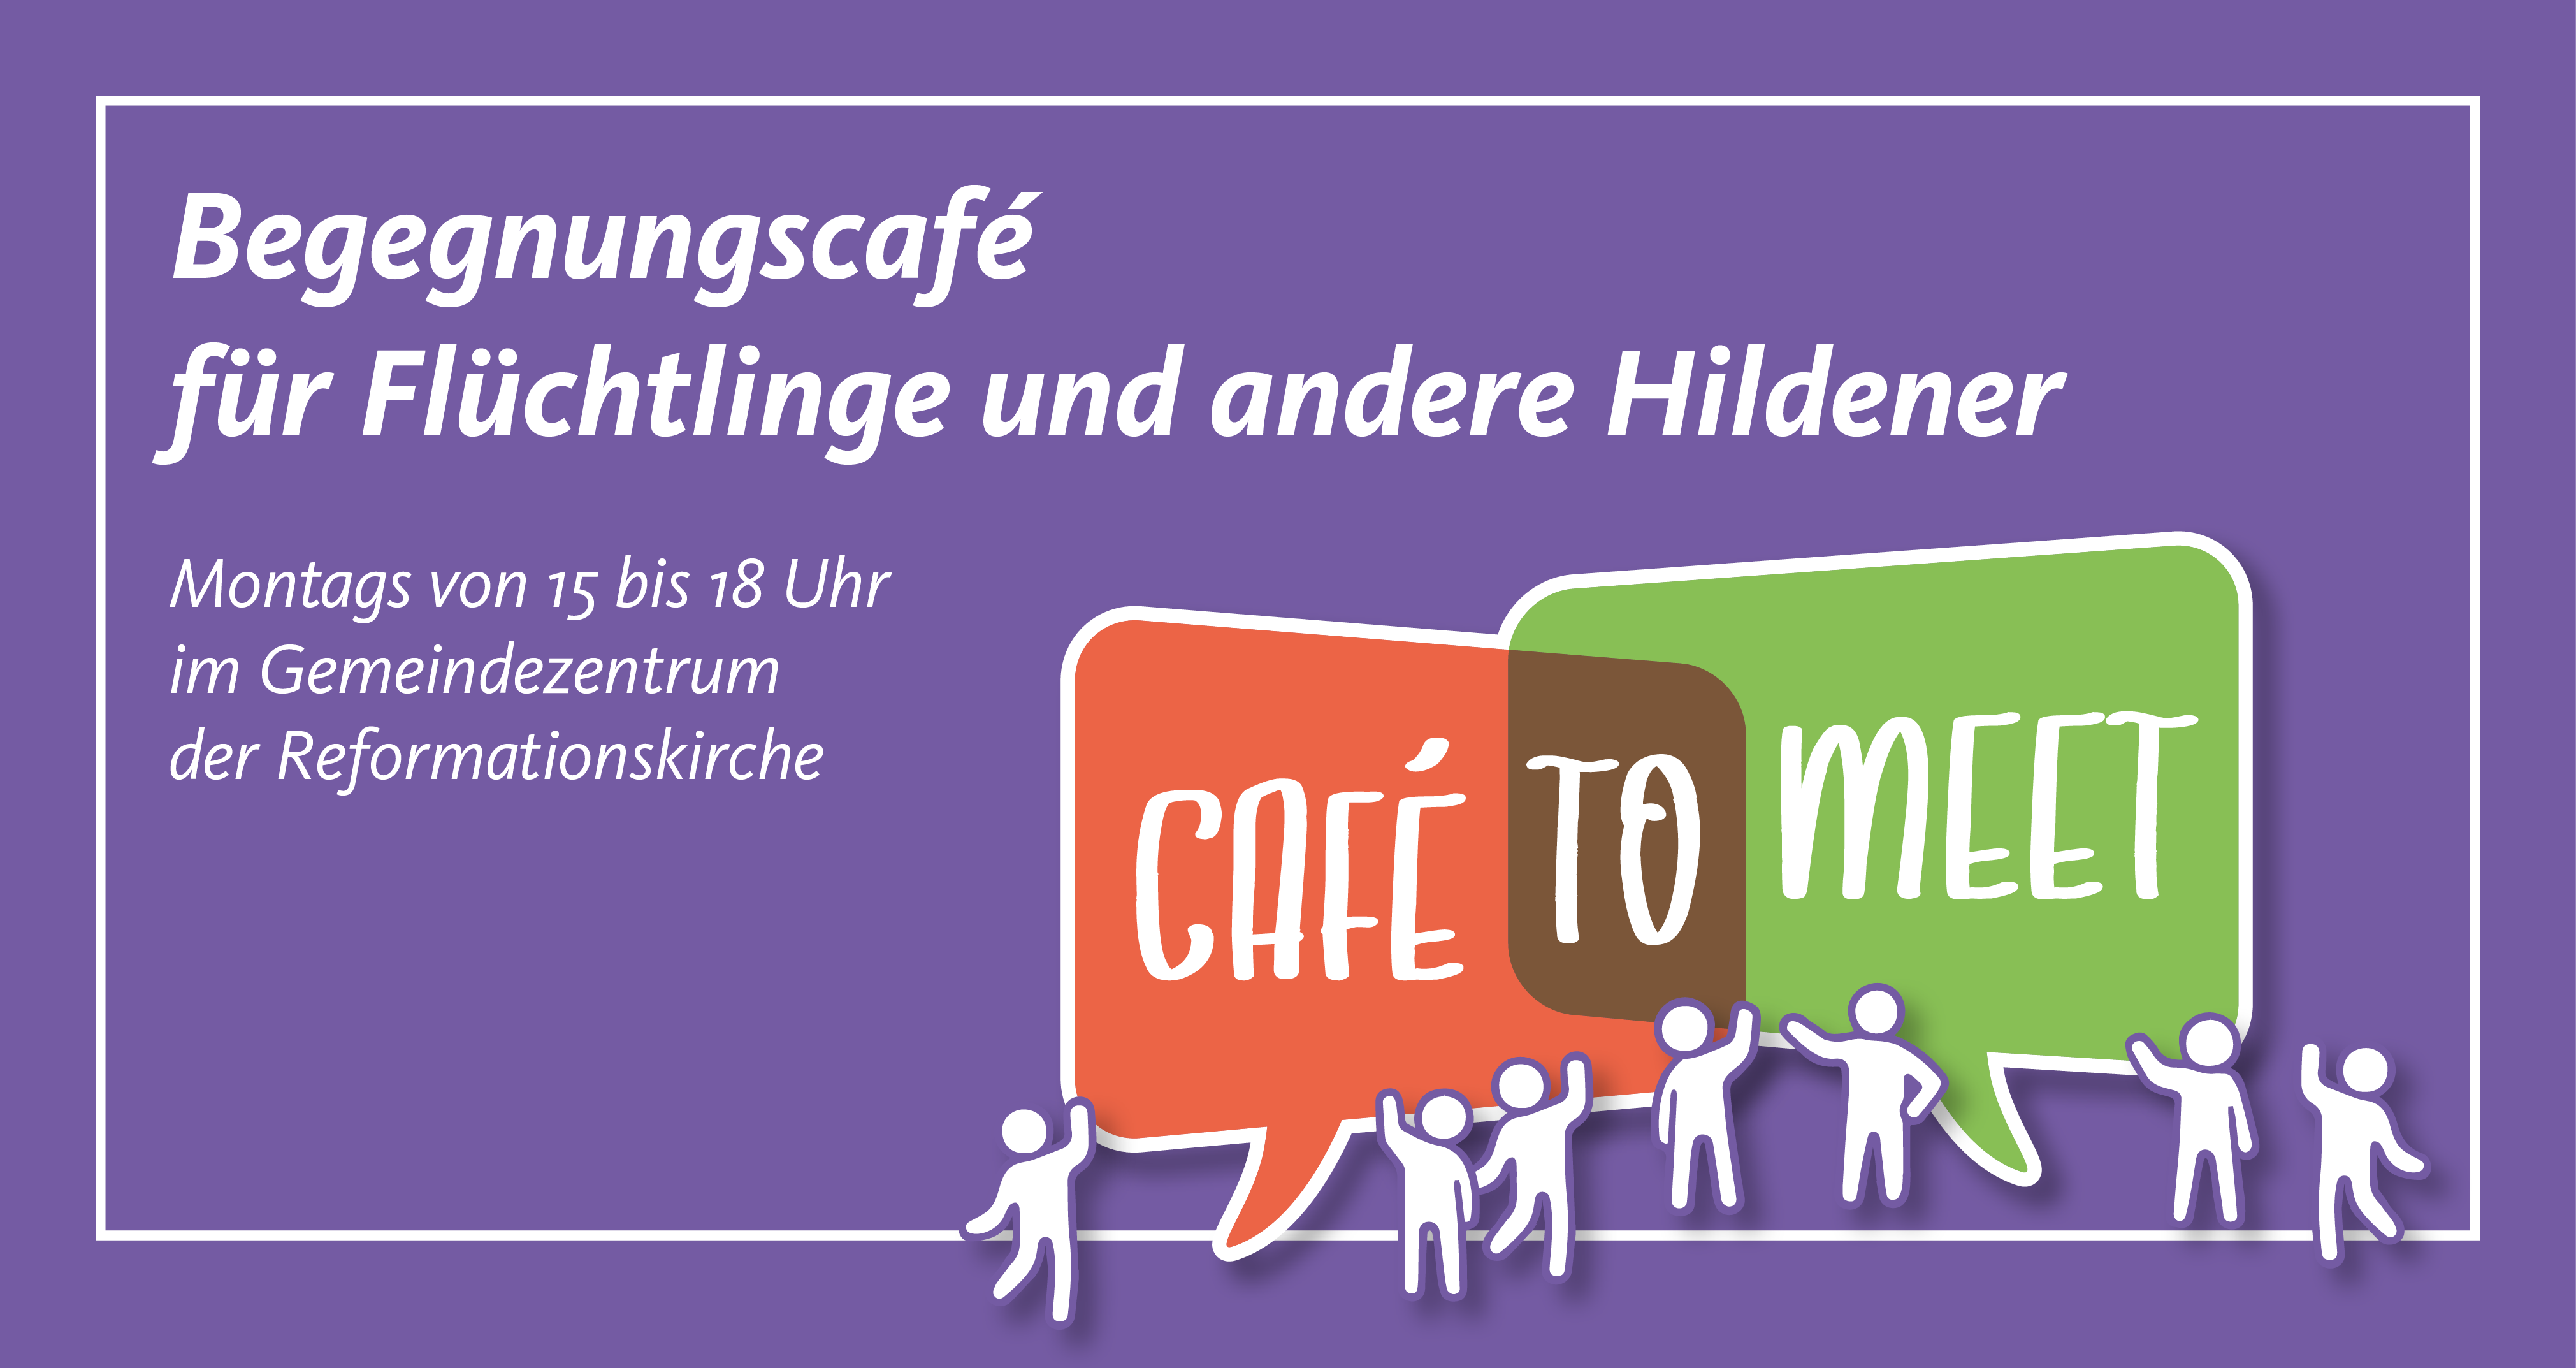 Café to meet – Begegnungscafé für Flüchtlinge und andere Hildener